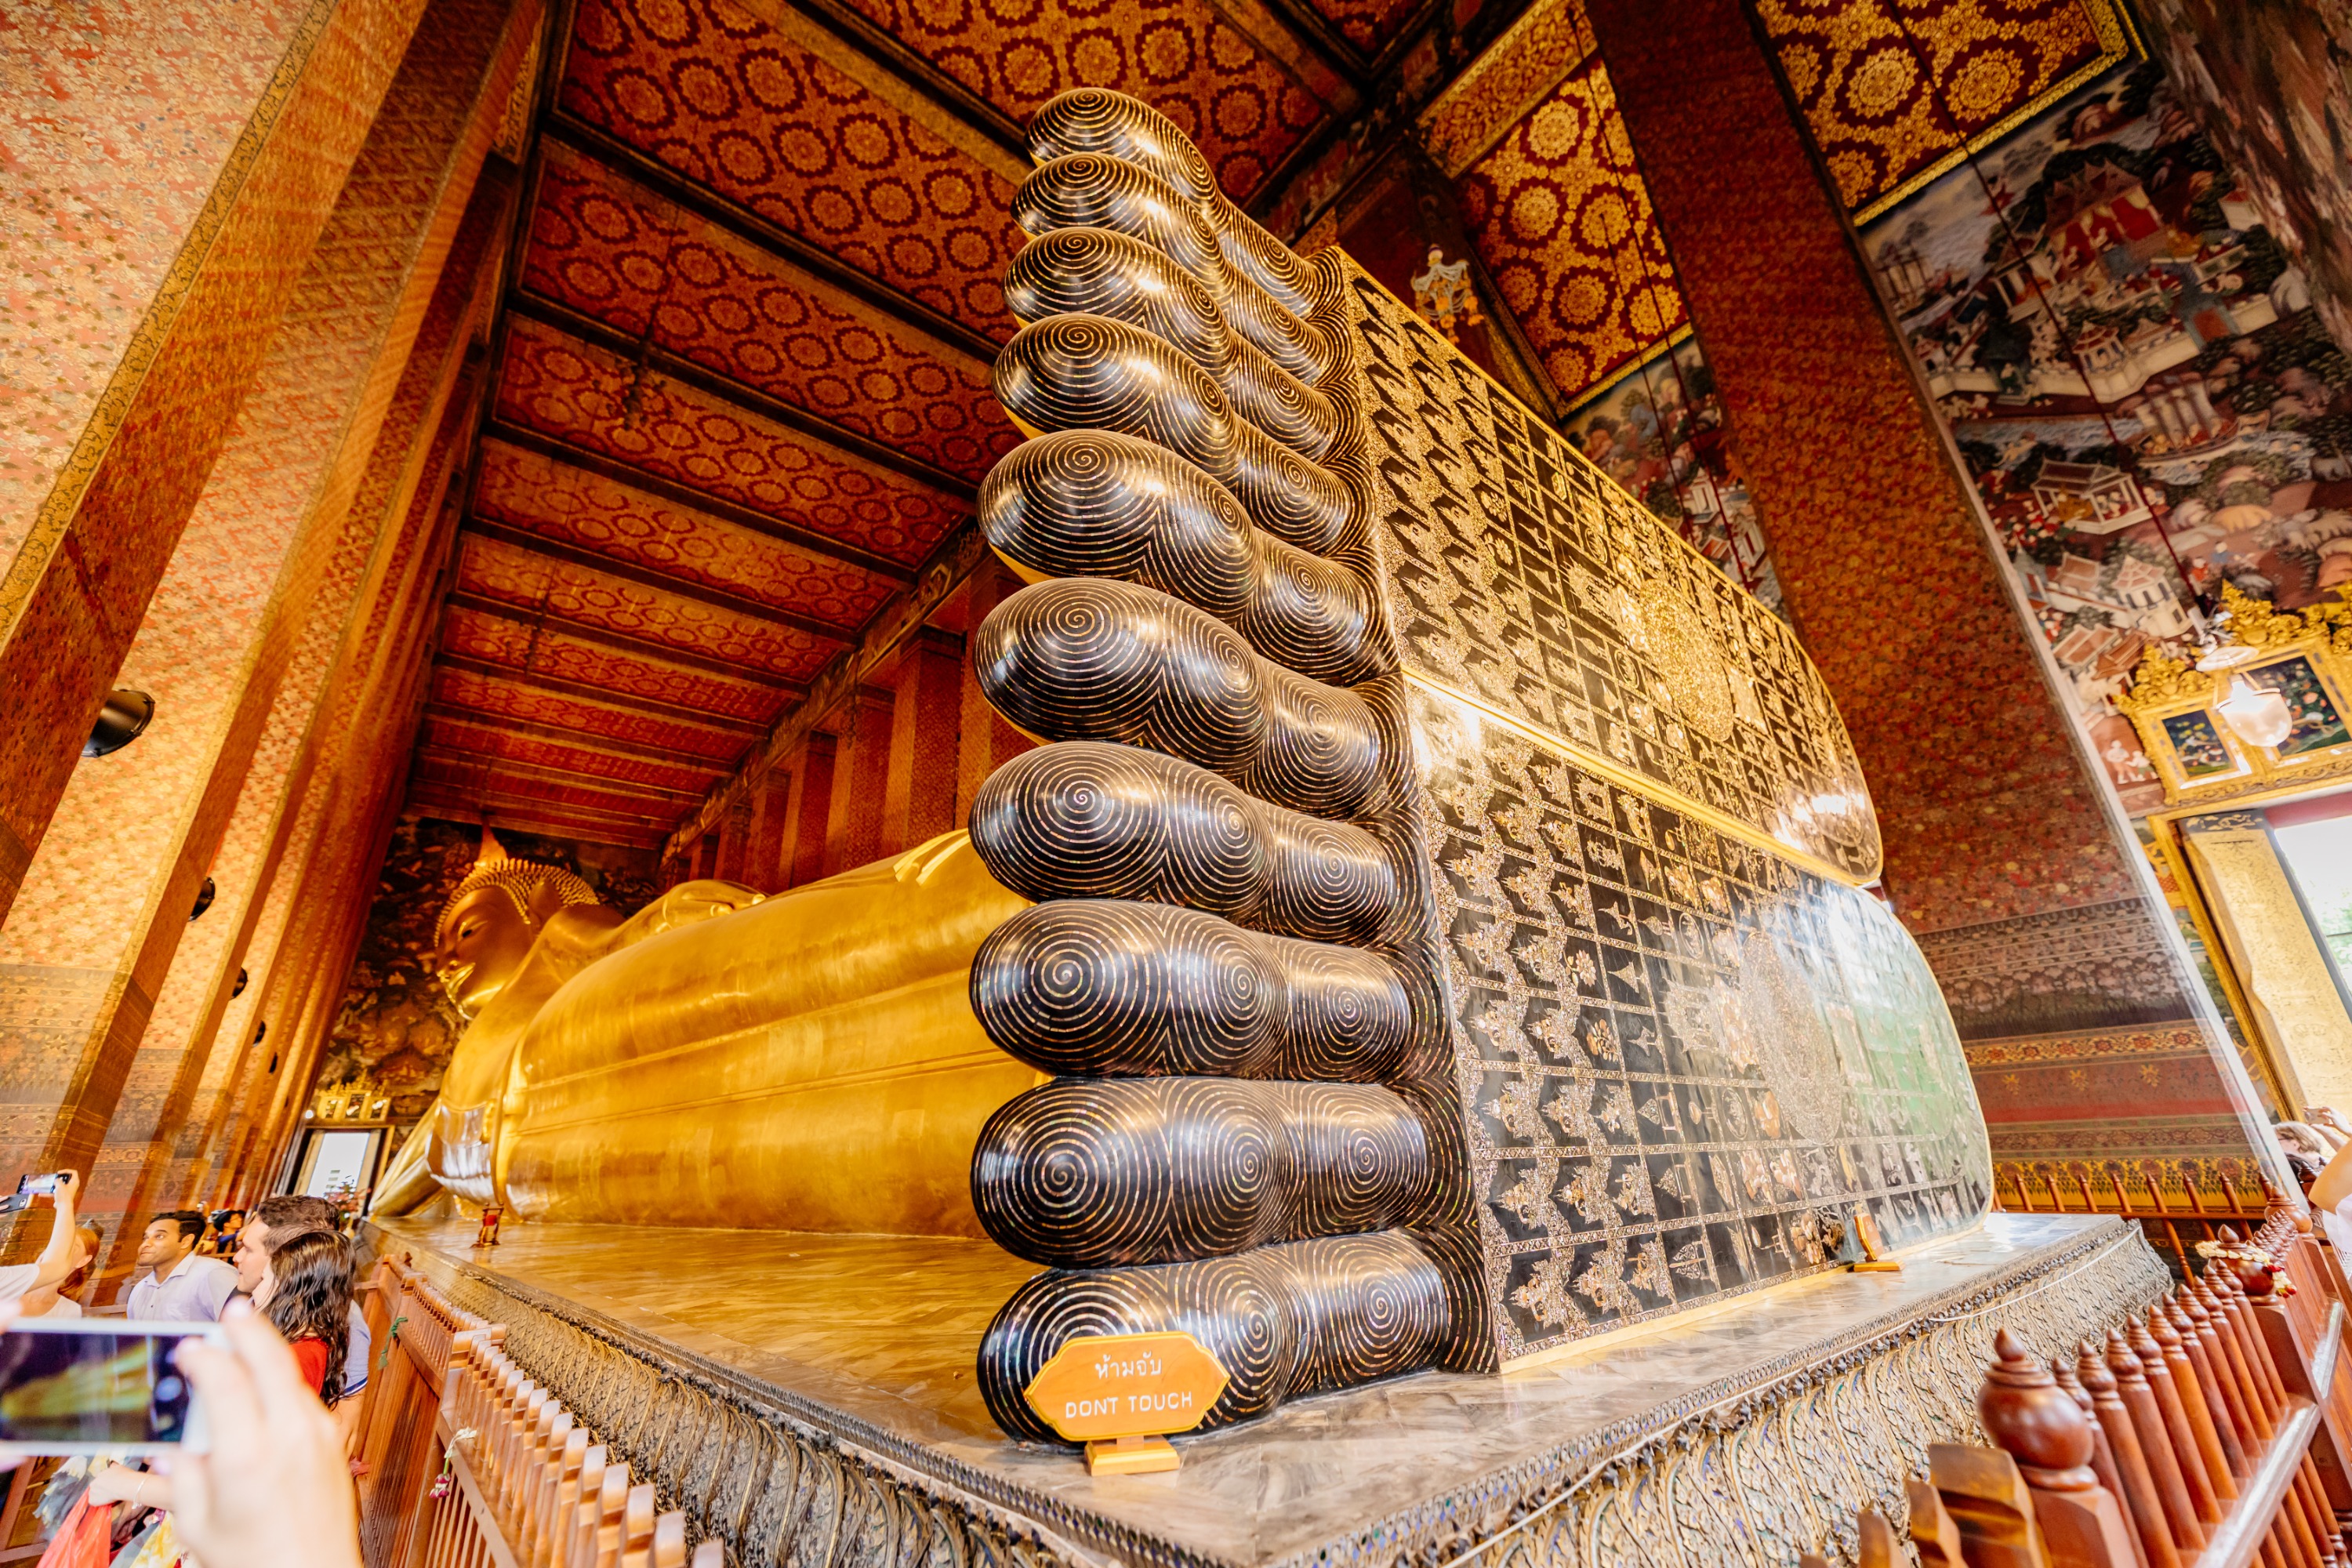 臥佛寺也是去泰國必訪的古老寺廟之一，擁有泰國最大的臥佛像，巨大且莊嚴